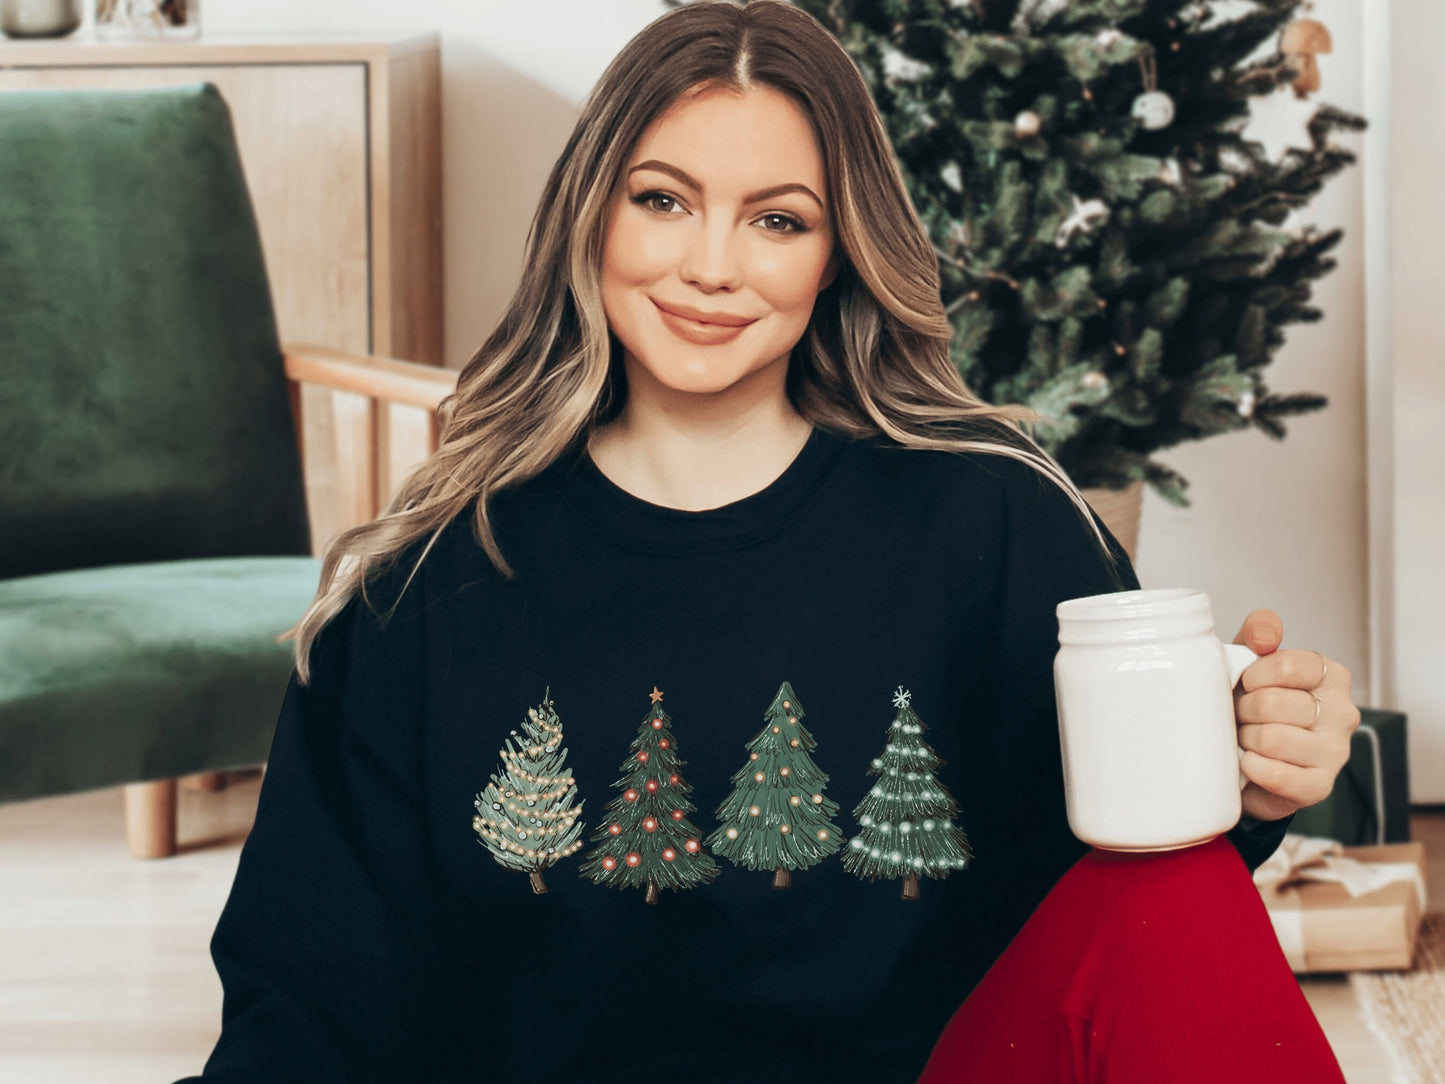 Womens Christmas Sweatshirt, Christmas Crewneck